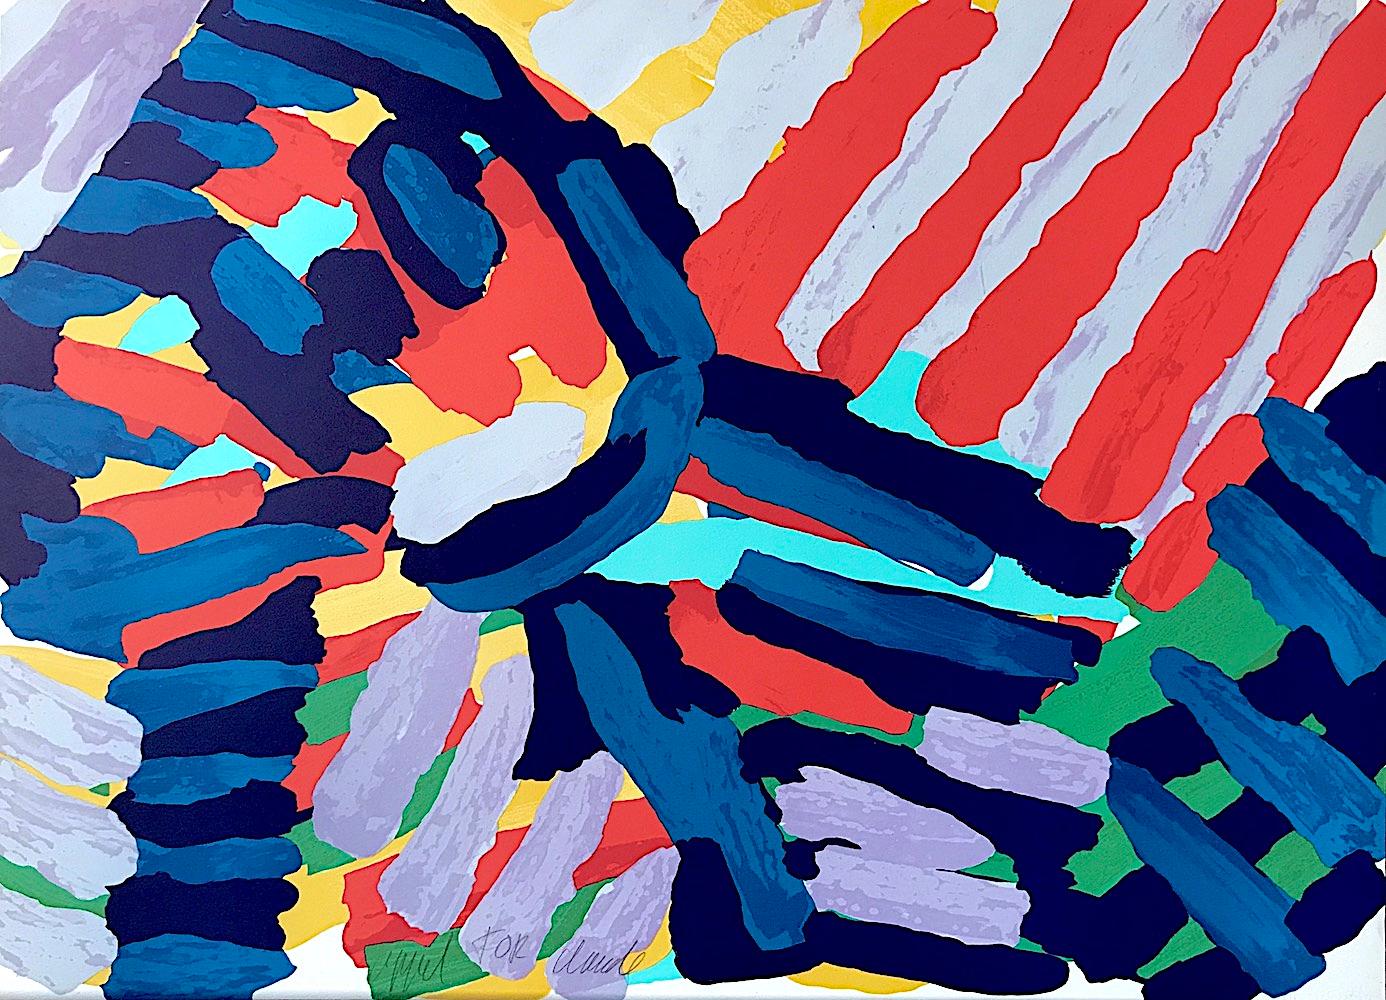 Abstract Print Karel Appel - WALKING IN COLORS - Lithographie signée, figure abstraite, bleue, noire, rouge, lavande